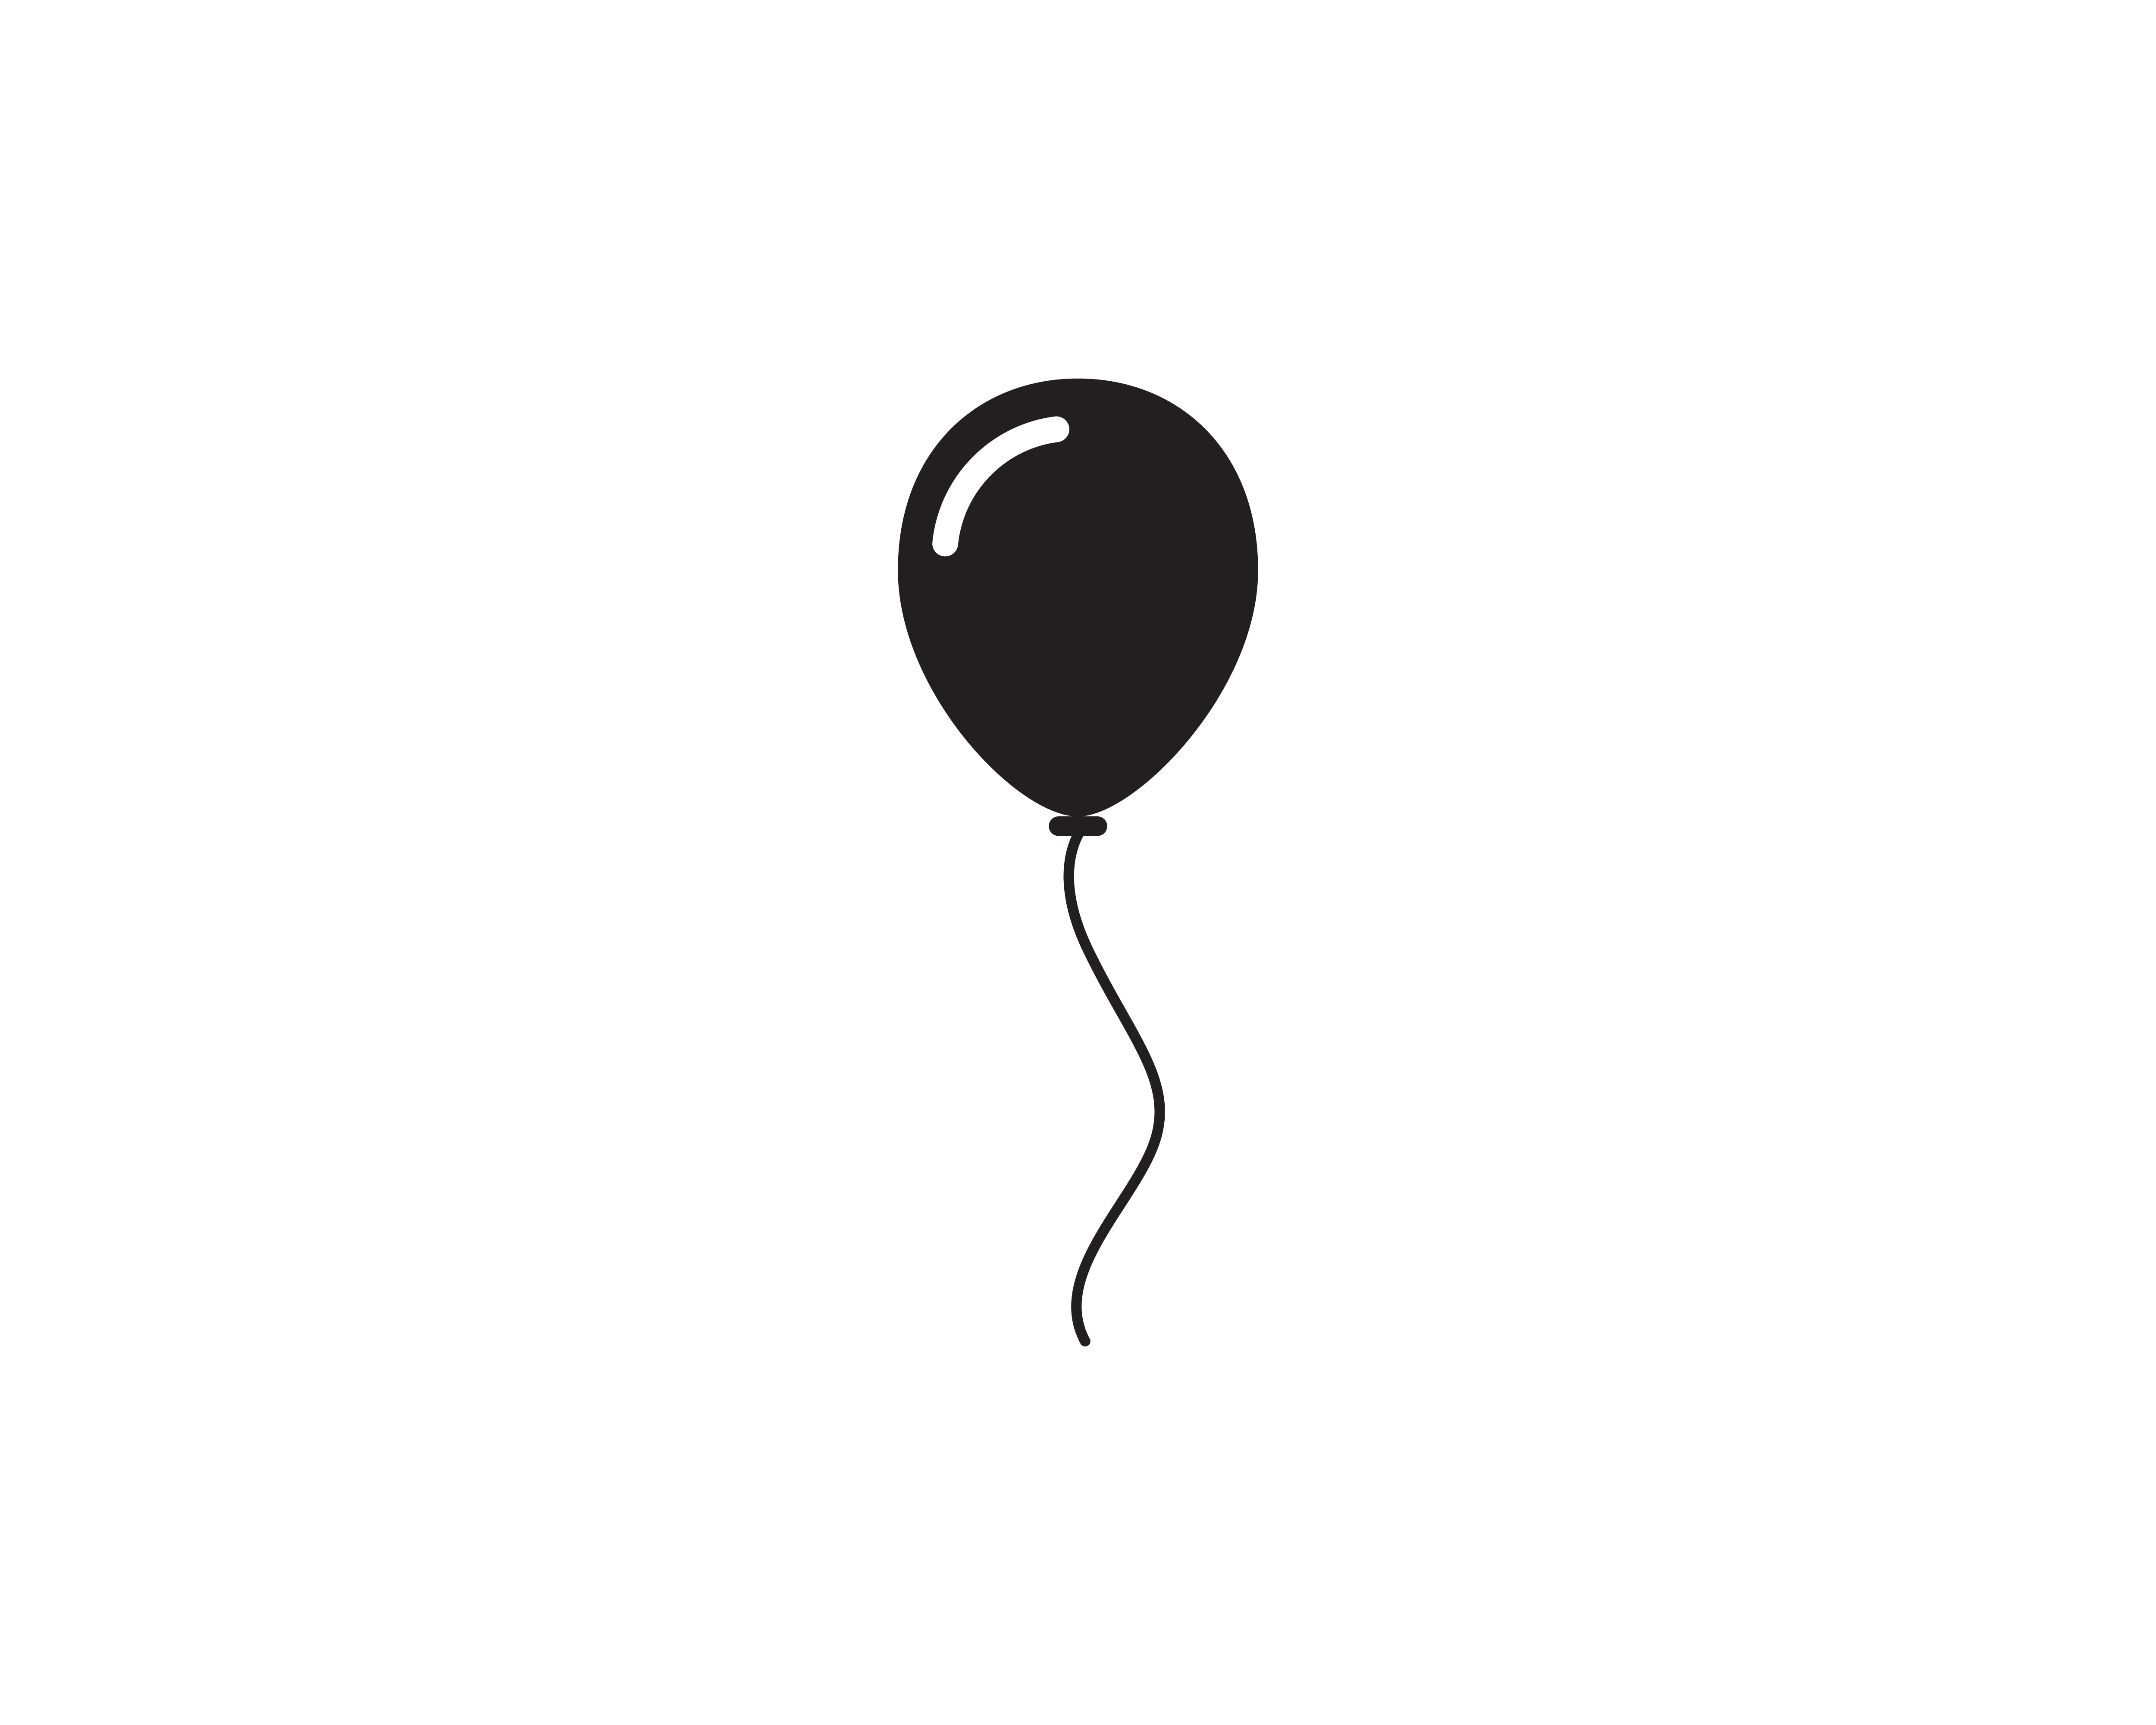 Meesterschap Rekwisieten voor Balloon Vector Art, Icons, and Graphics for Free Download